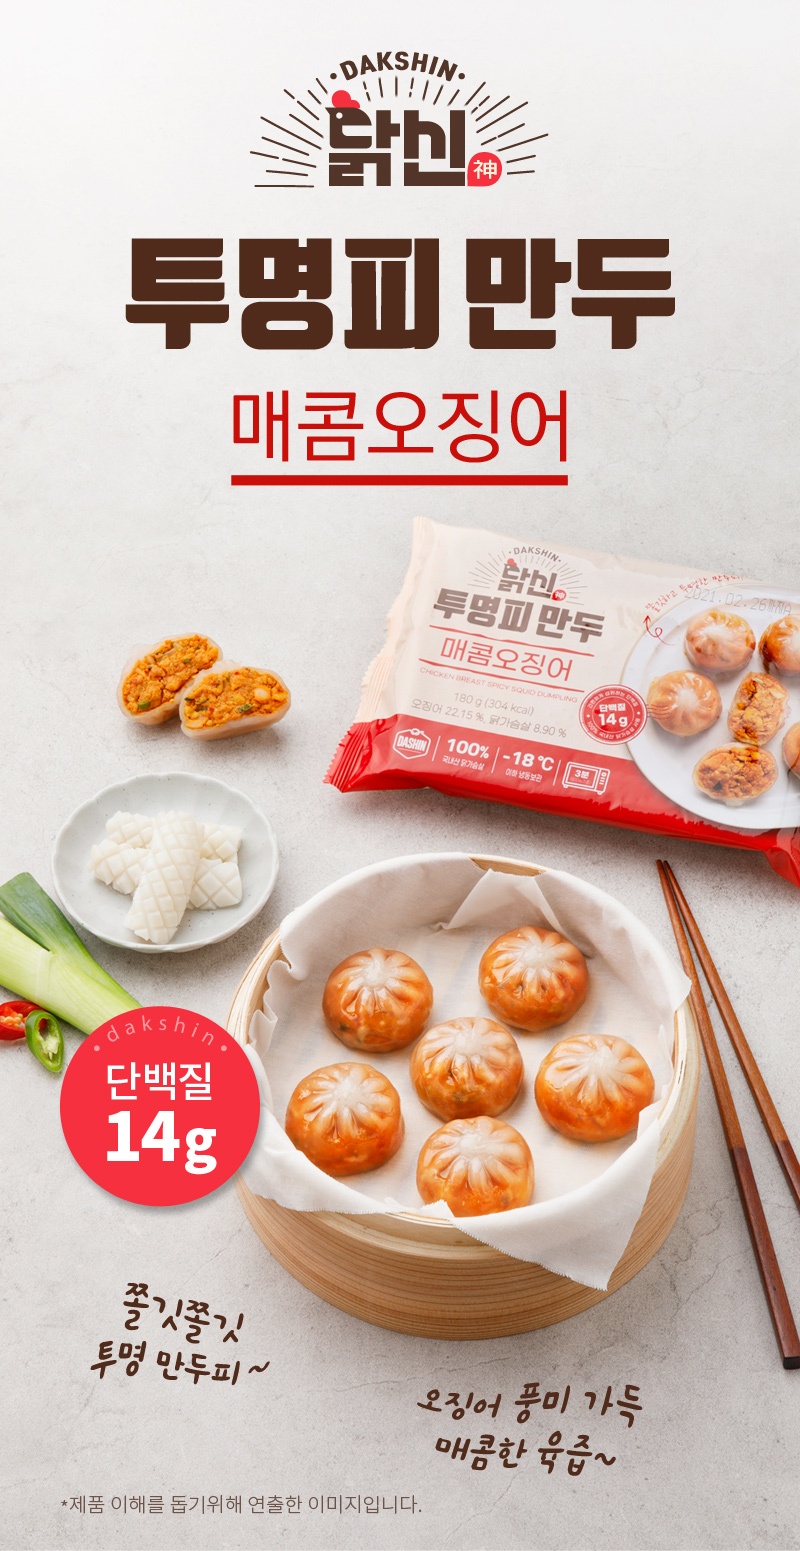 닭신 투명피 만두 매콤오징어 체험단 모집 (06.10~06.22)